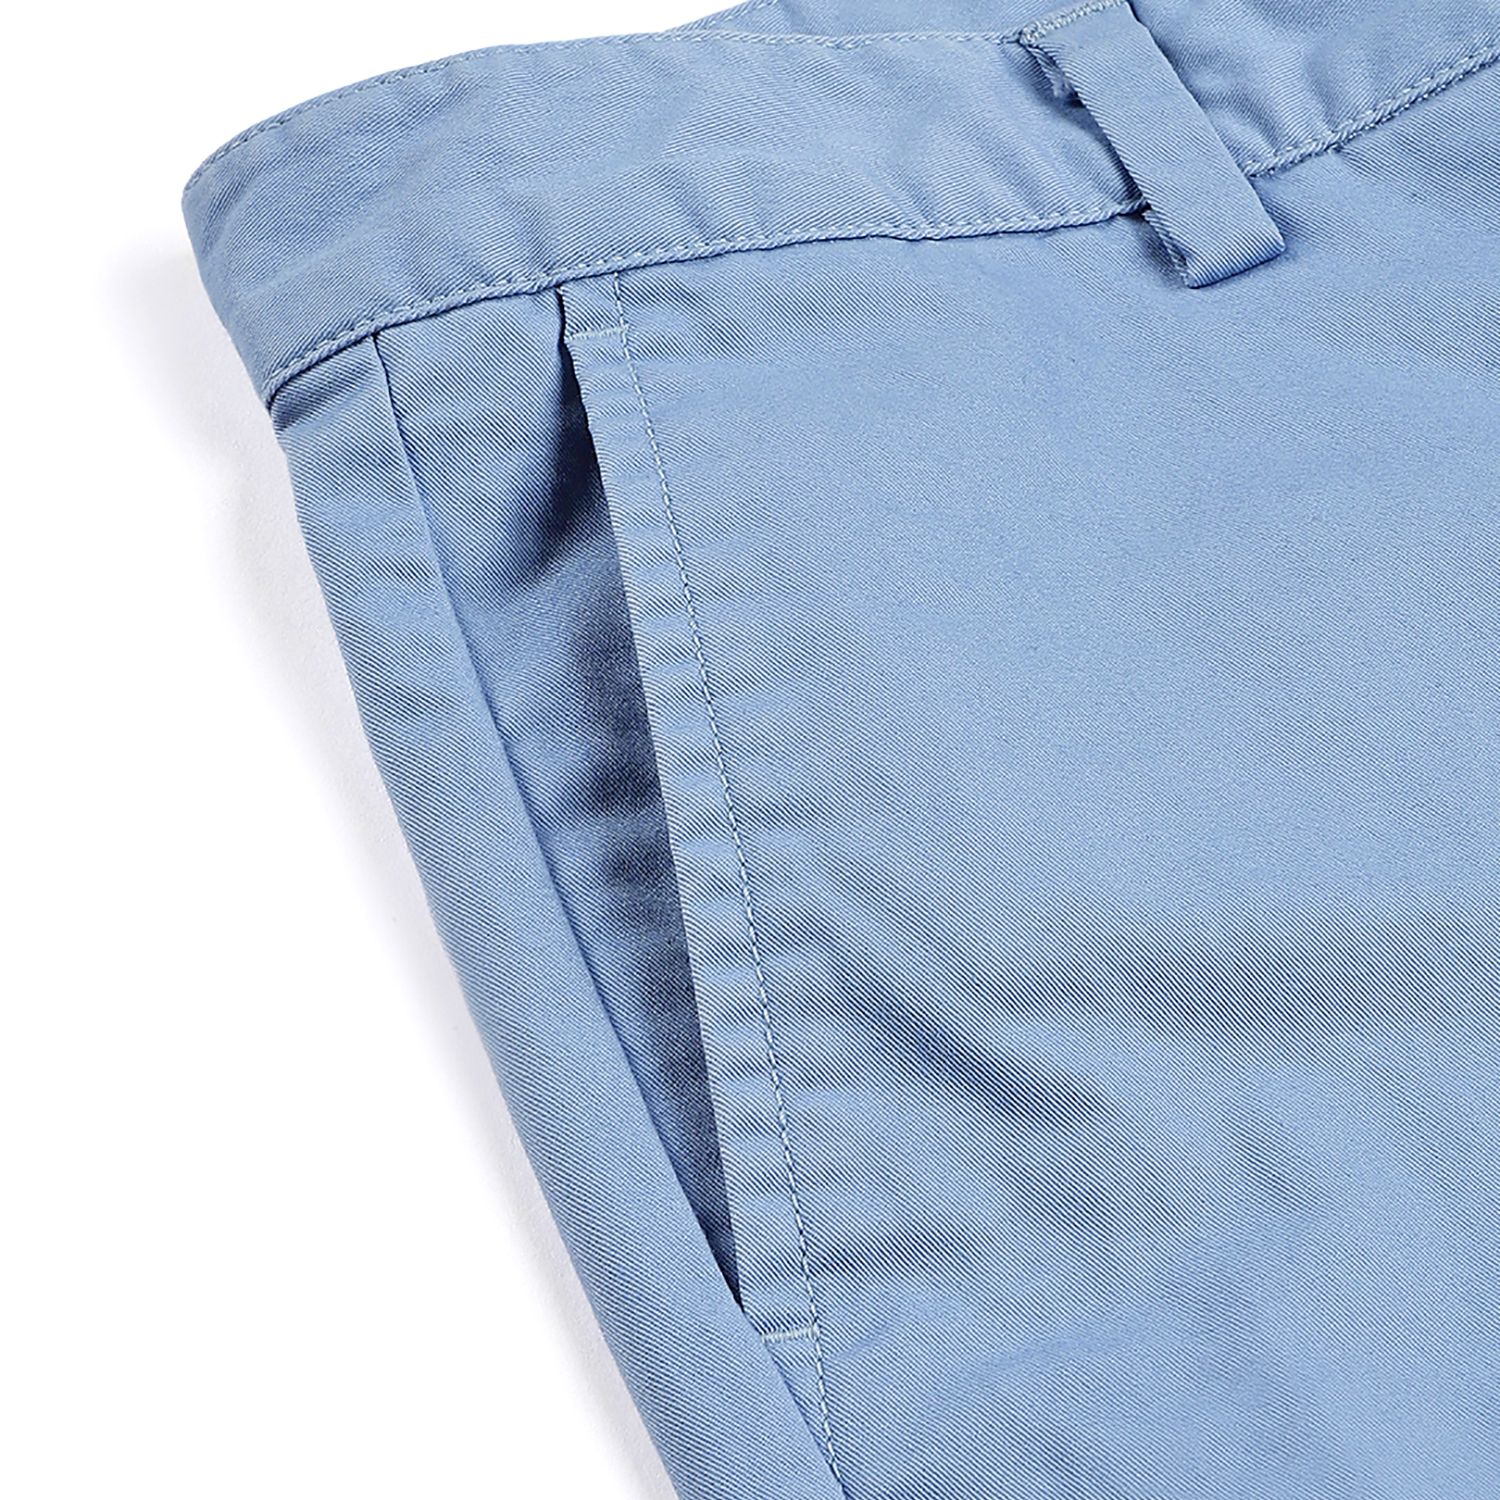 Blue shorts for men